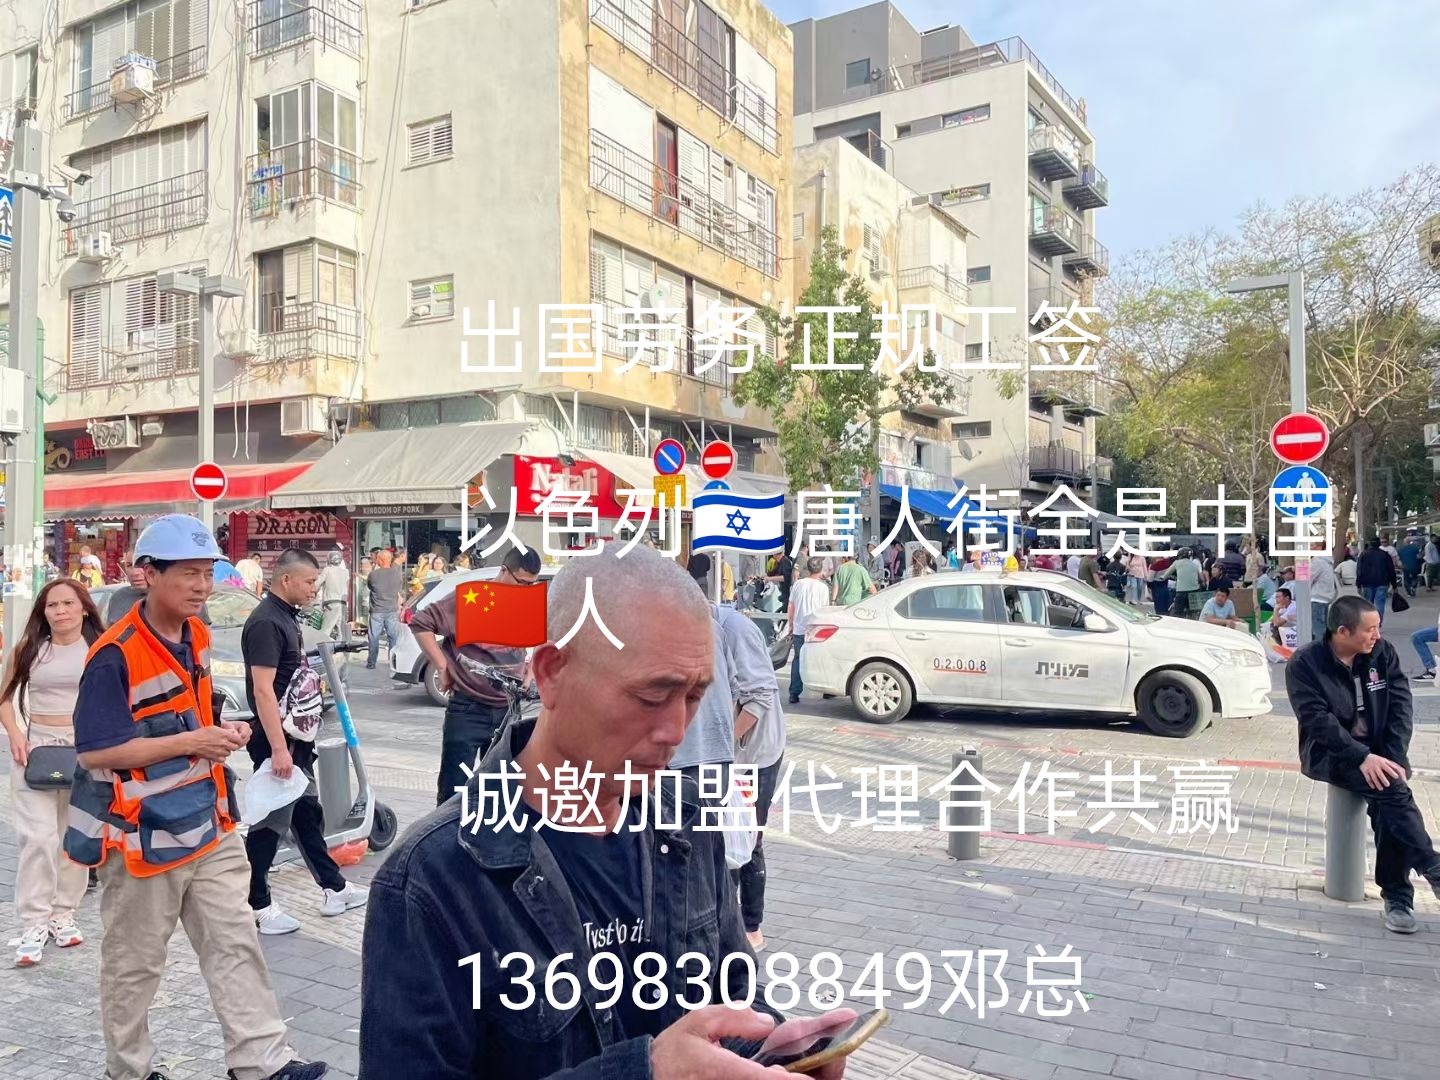 远境劳务上海出国0费用急招以色列超市理货员员工作8小时